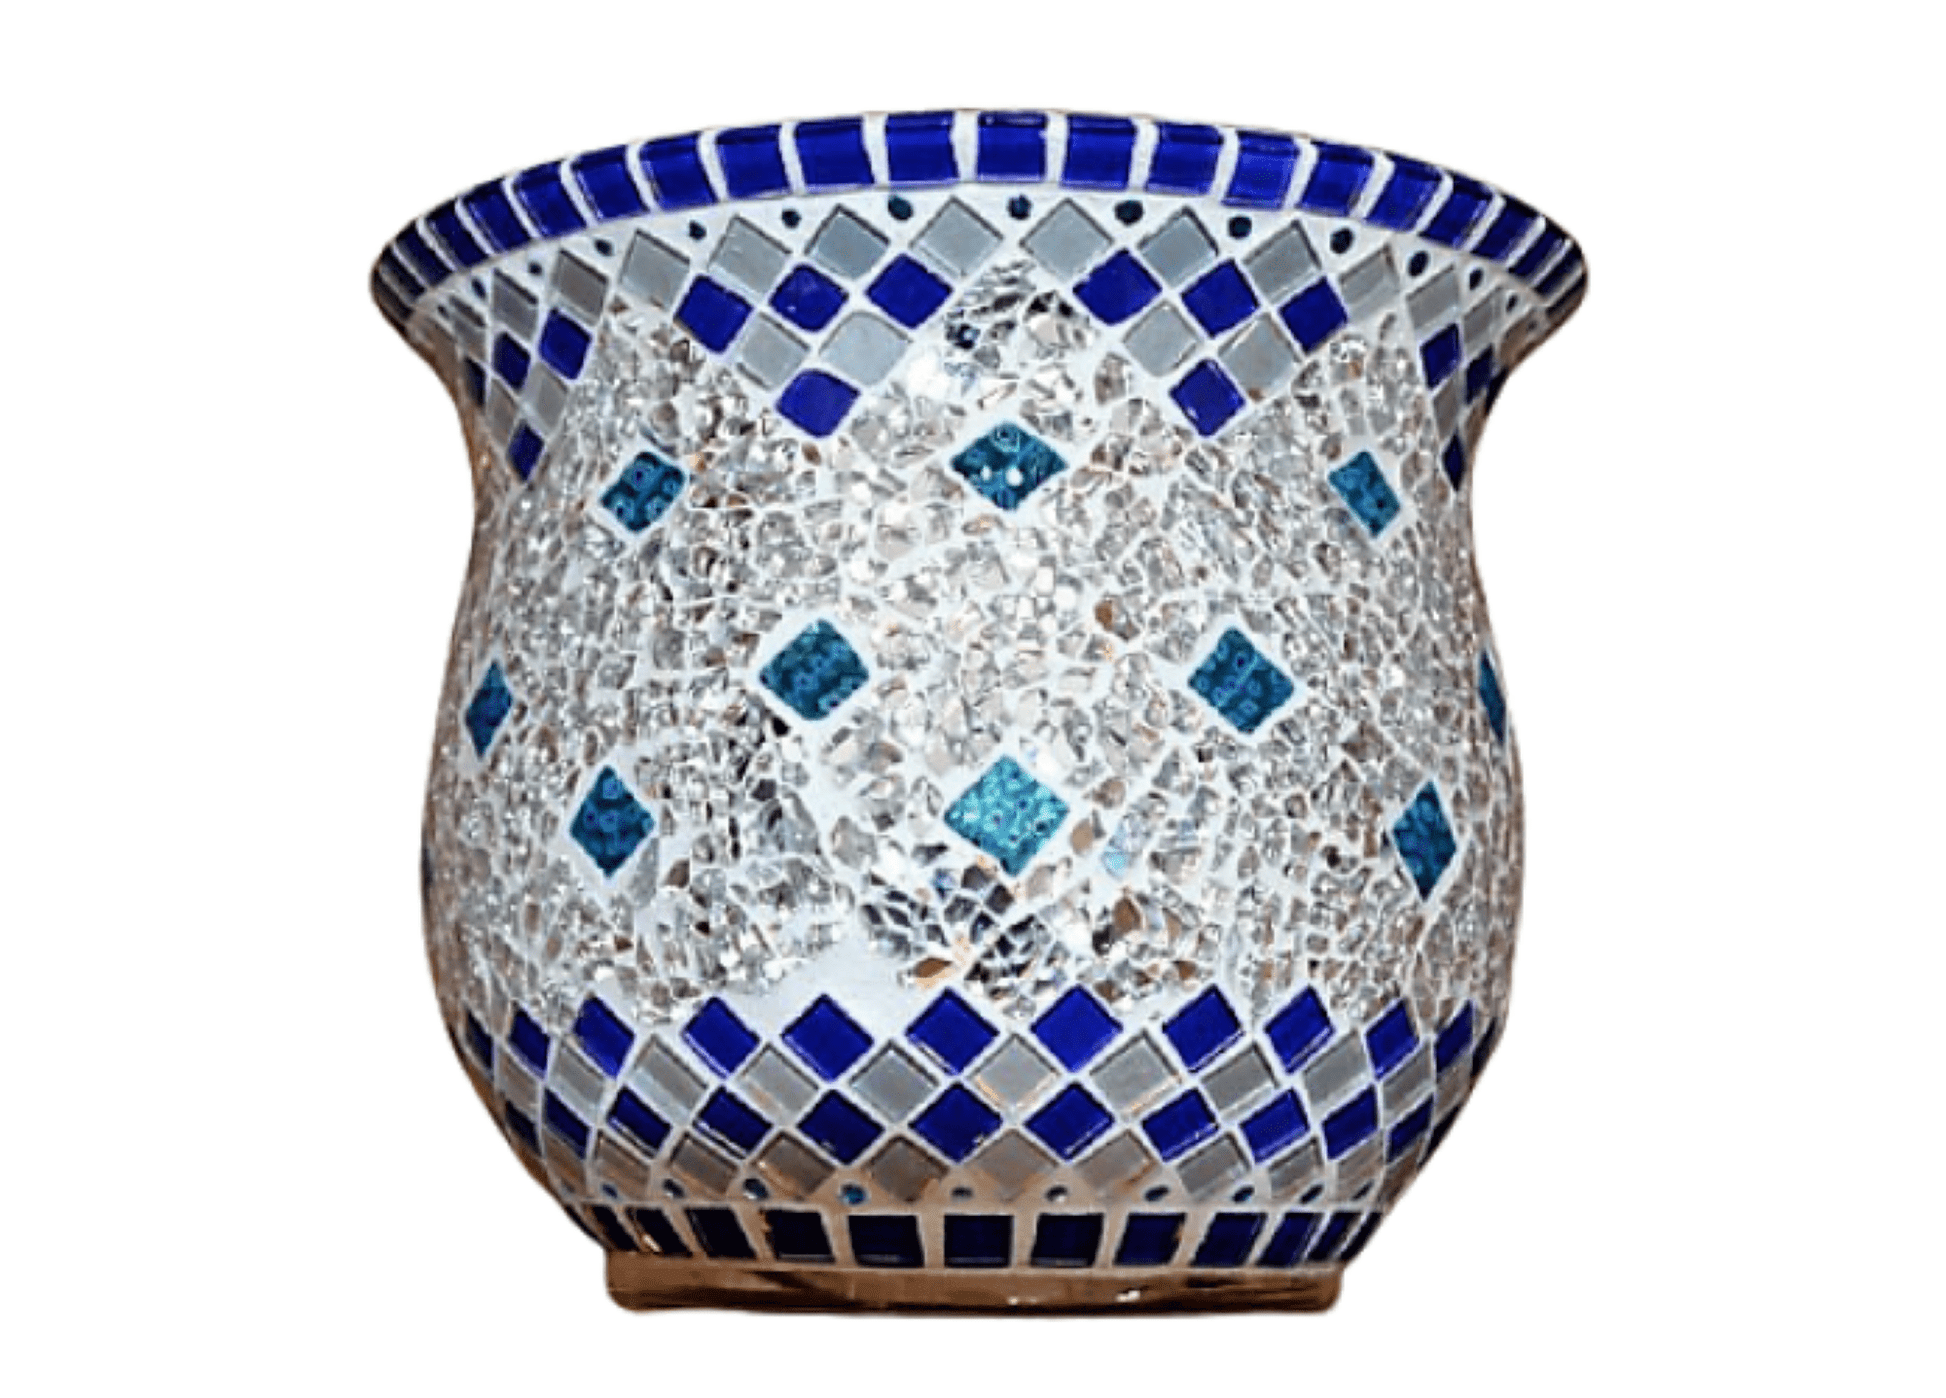 Handgemachtes Windlicht in blau und silber 17 cm hoch - Einzelstück - Mosaikkasten aus alt mach neu blau